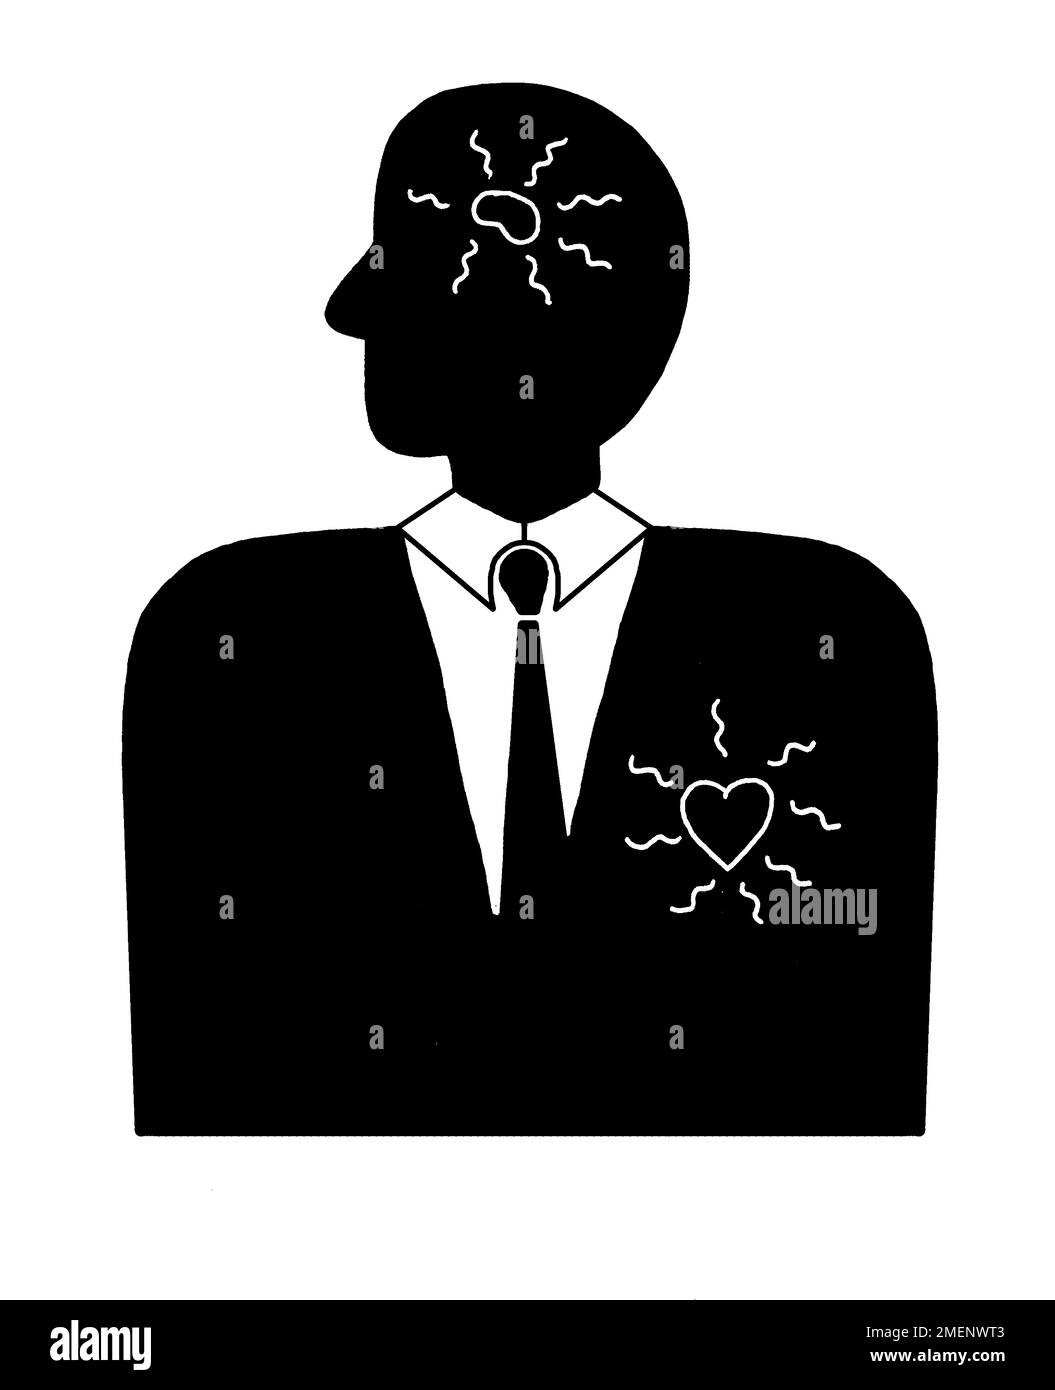 Illustration en noir et blanc d'une figure illustrant la croyance de Bakunin selon laquelle l'homme privilégié est dépravé d'intelligence et de cœur Banque D'Images